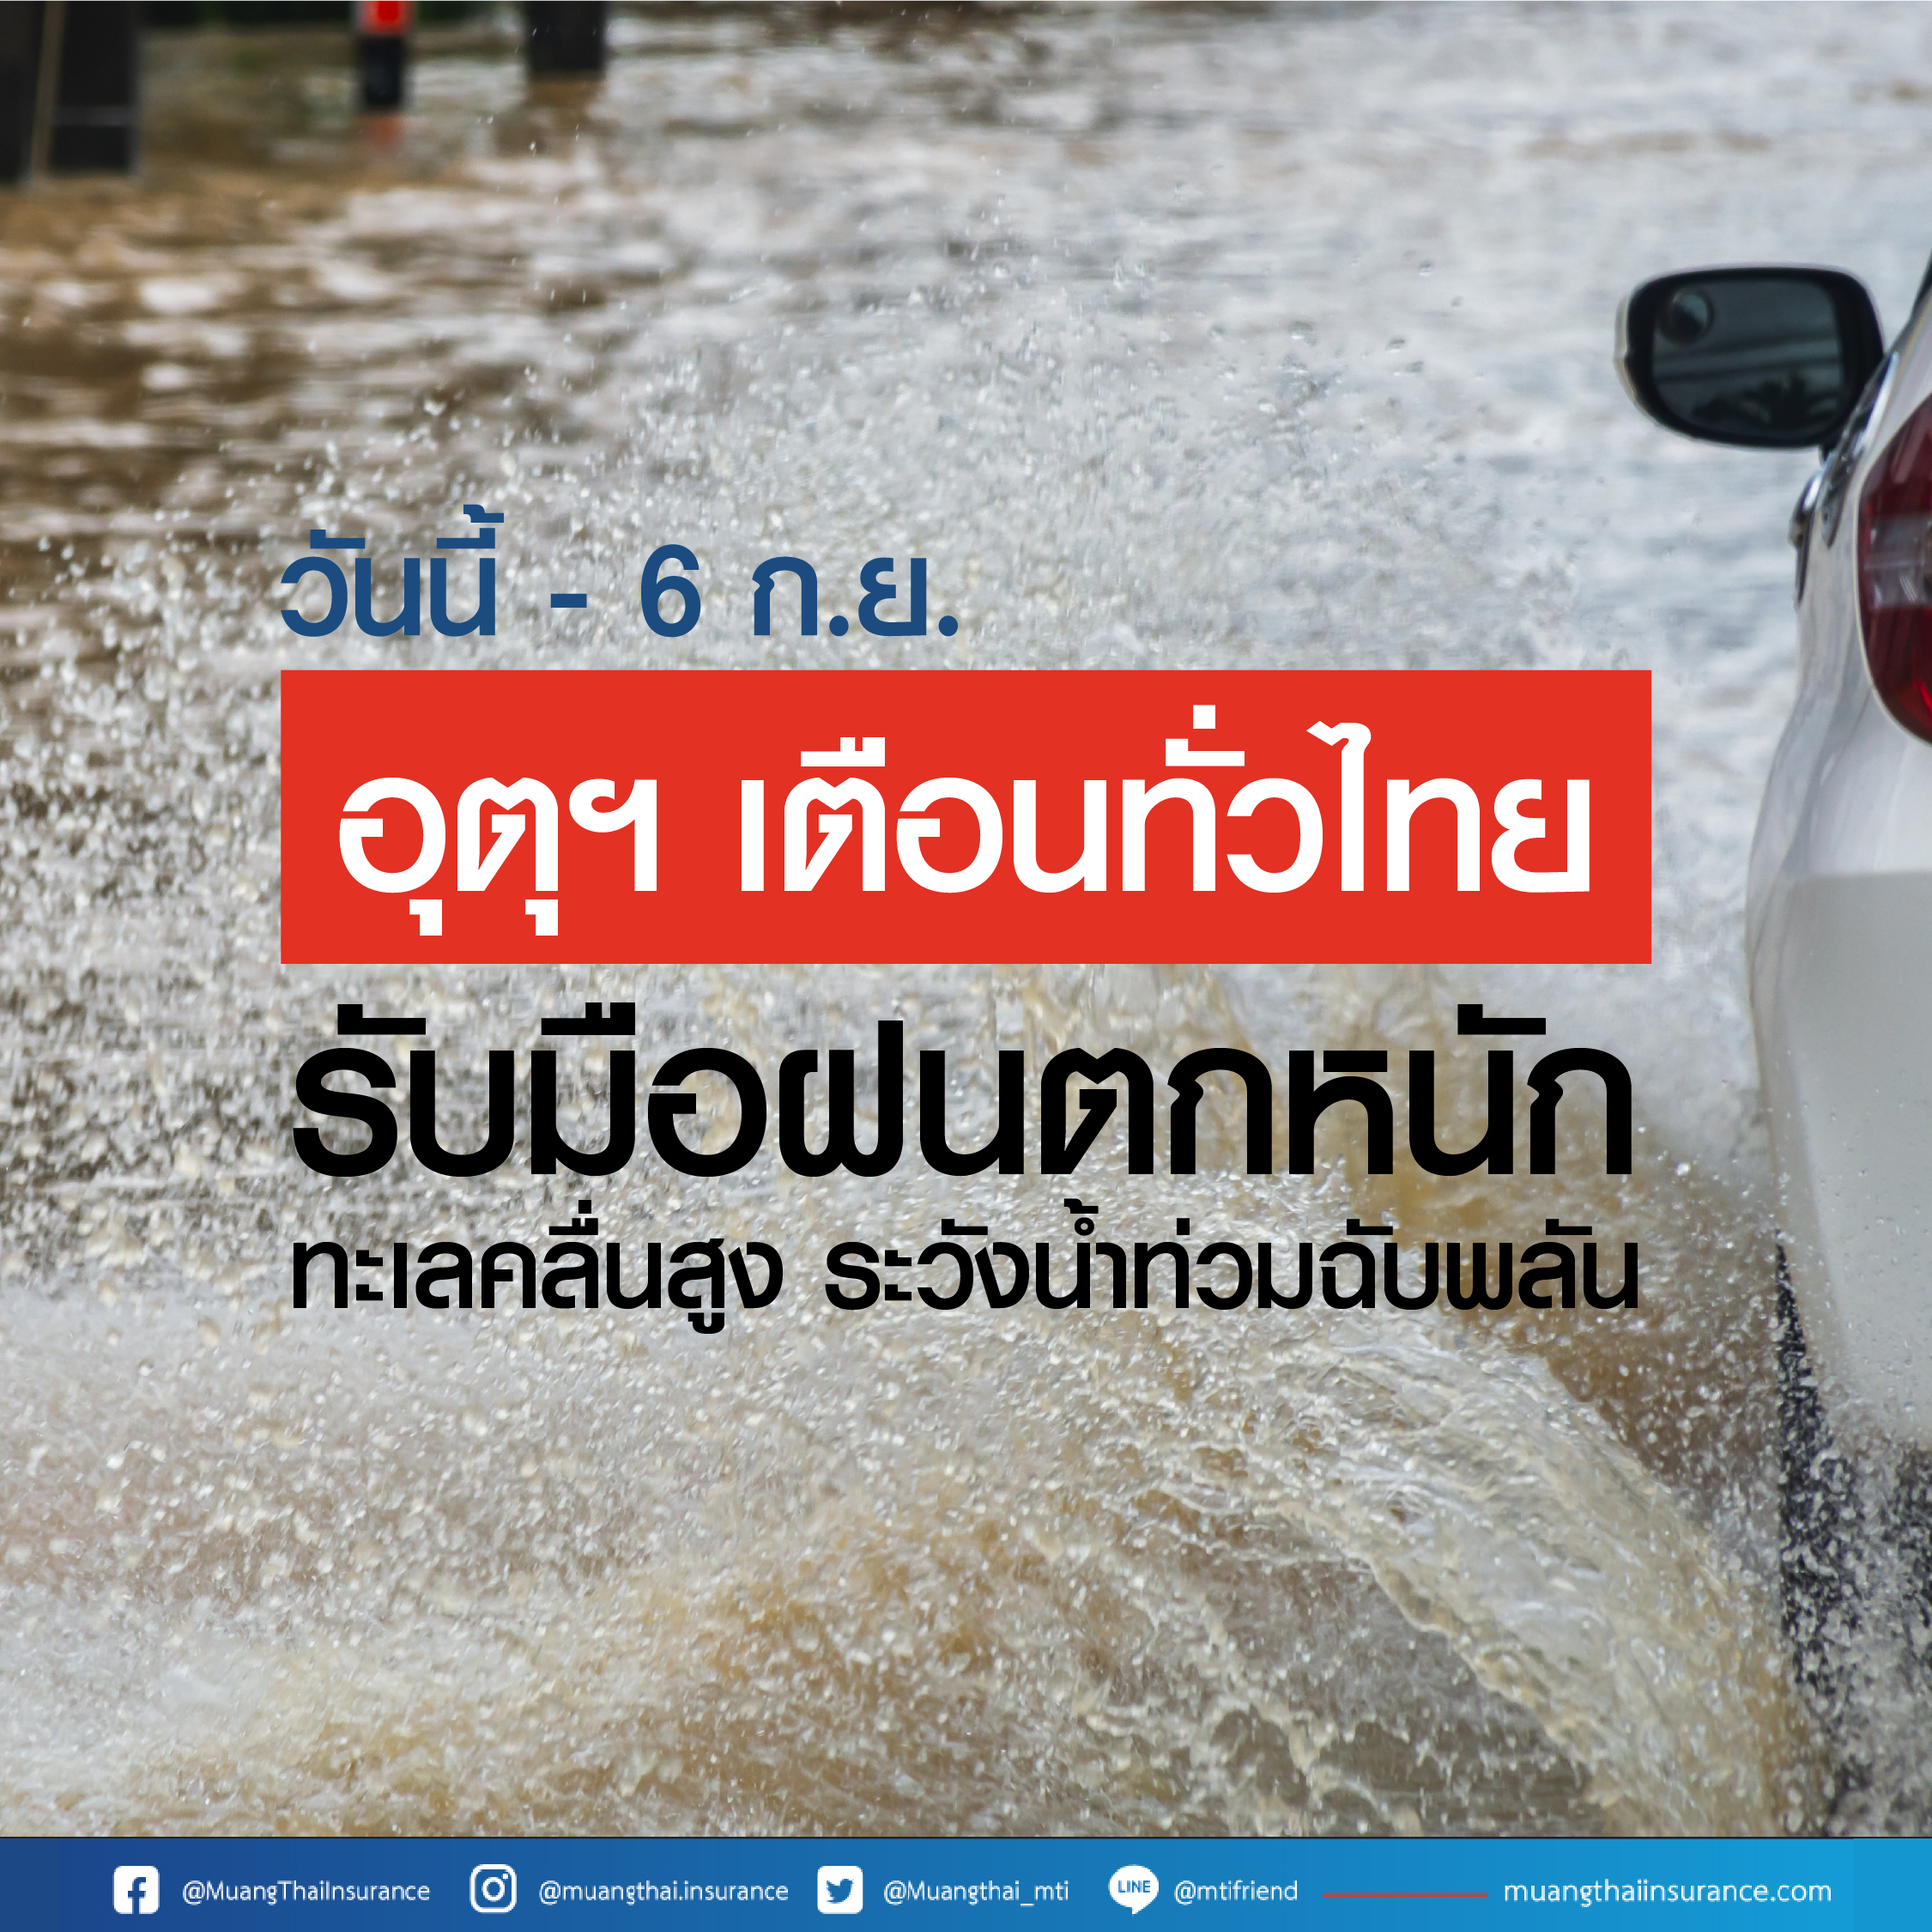 พยากรณ์อากาศวันนี้ – 6 ก.ย. อุตุฯ เตือนไทยรับมือฝนตกหนัก ระวังน้ำท่วมฉับพลัน